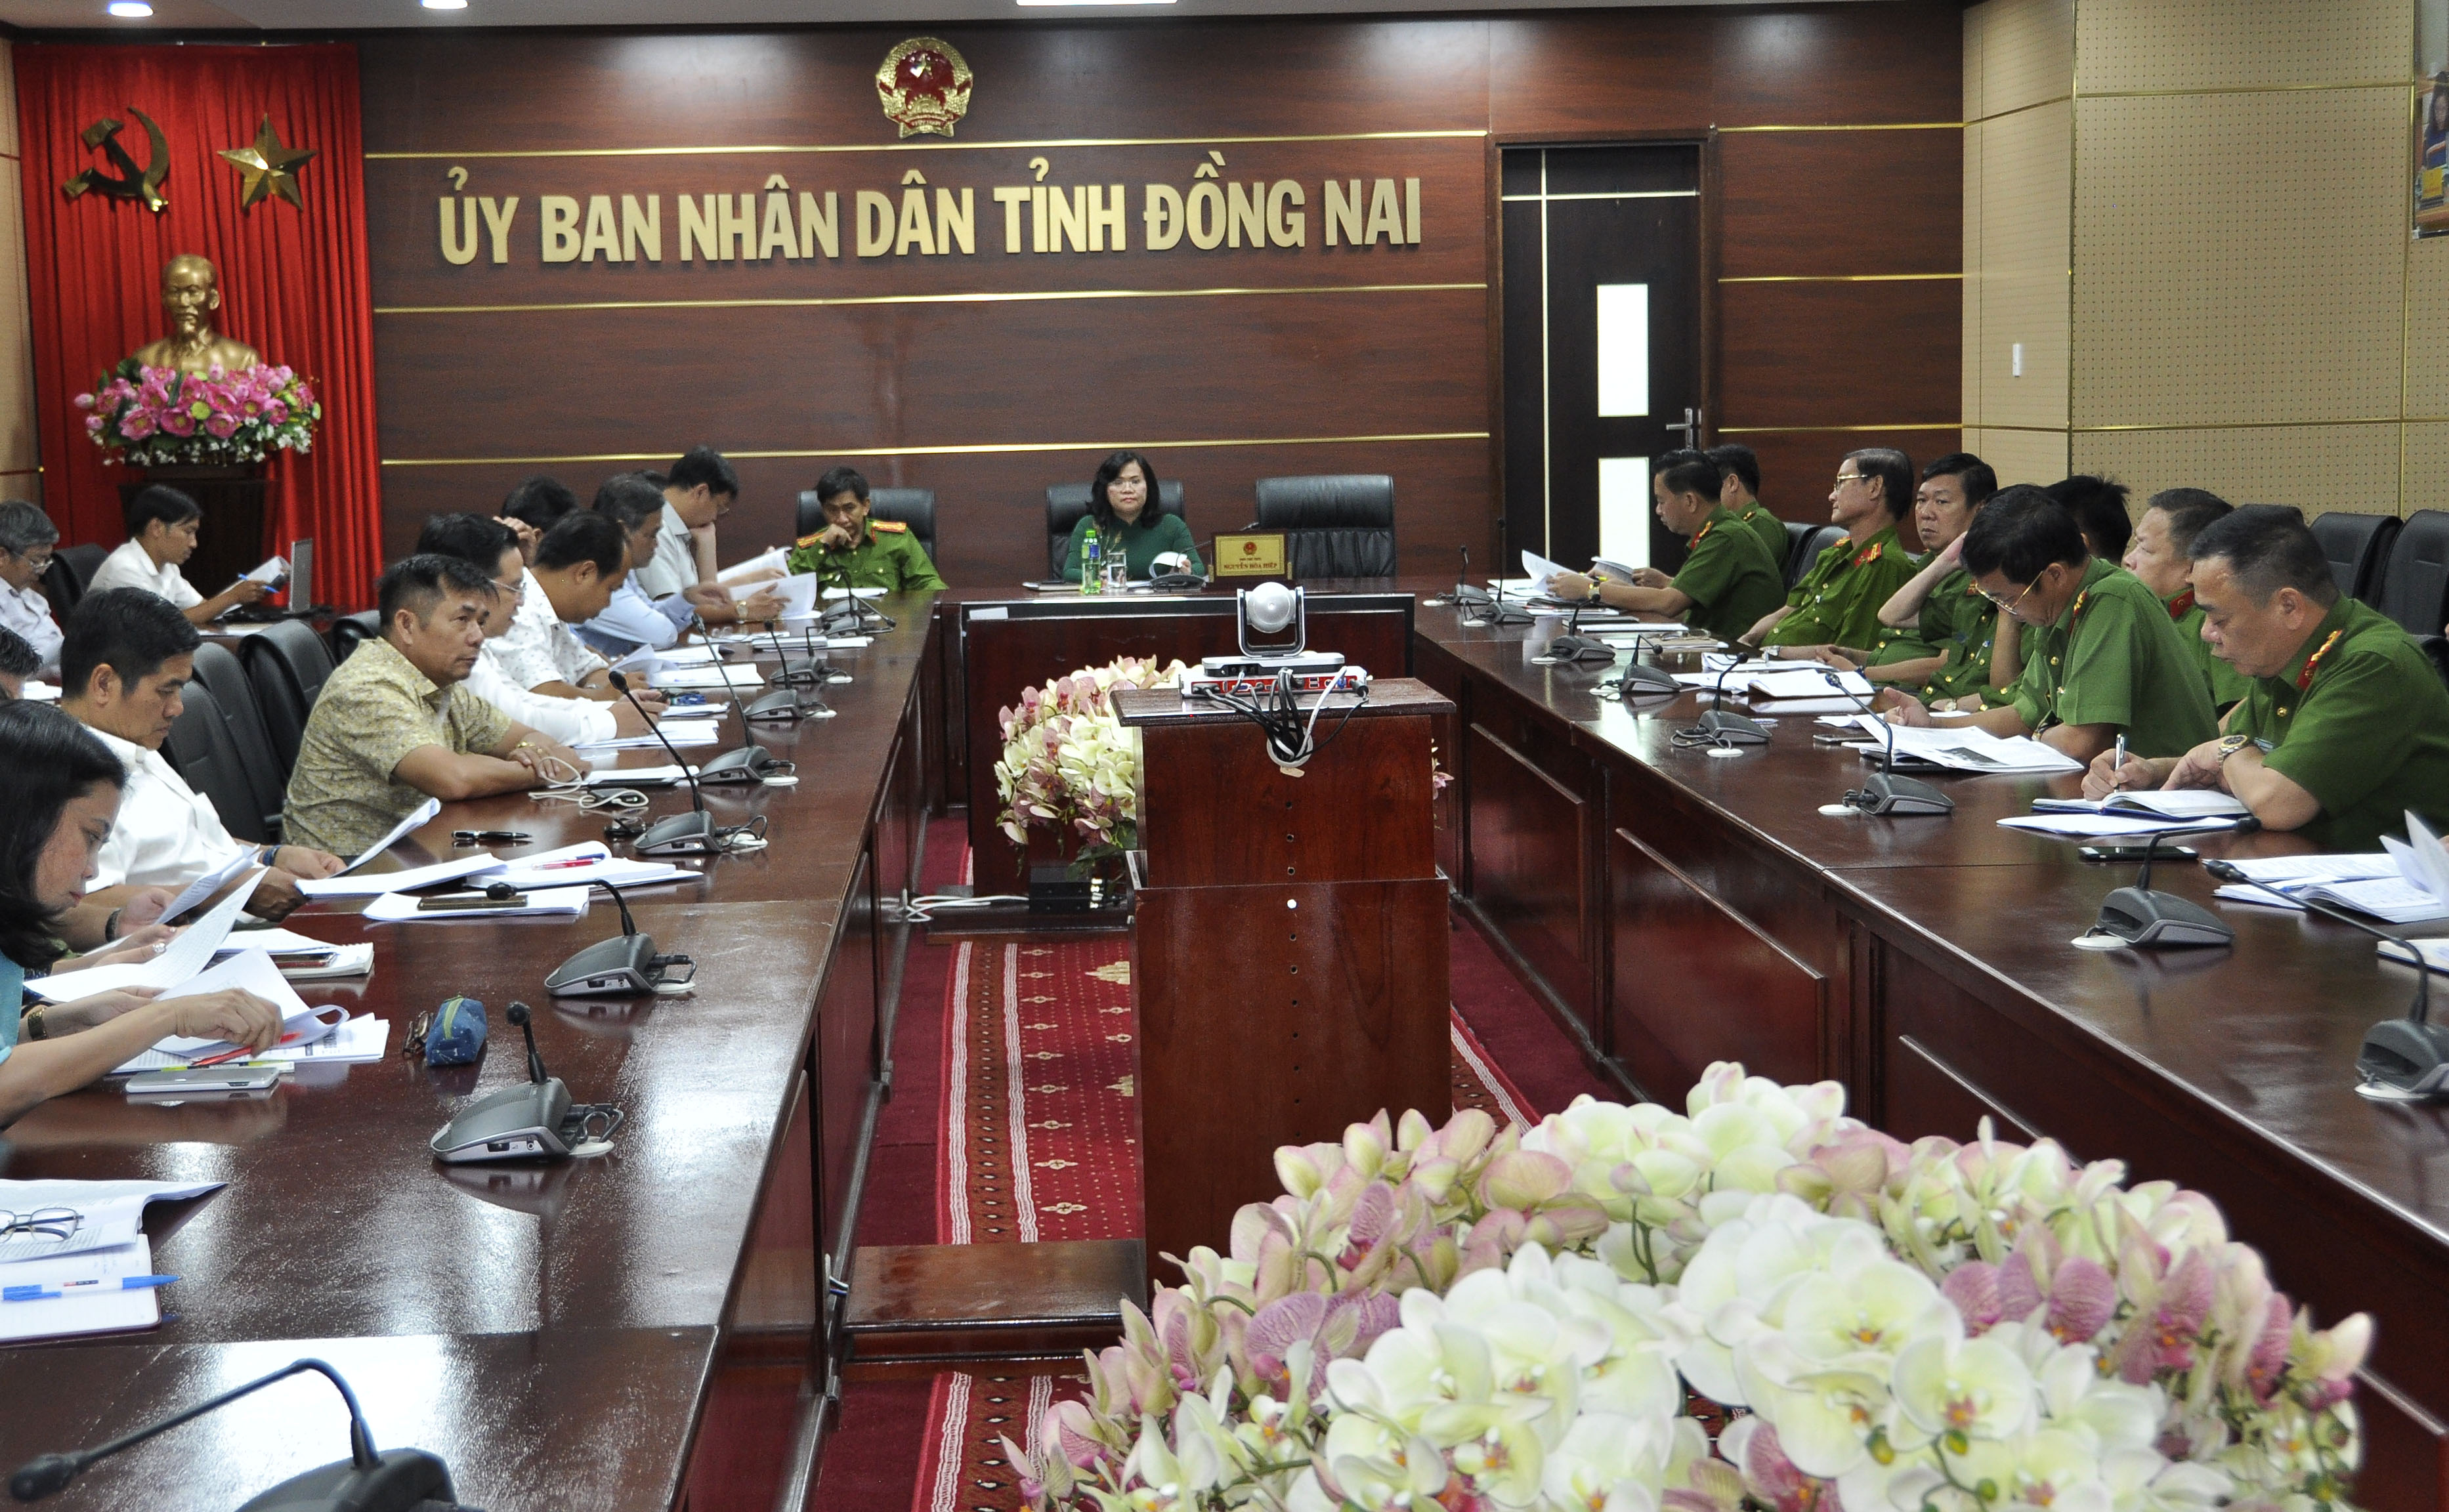 Quang cảnh hội nghị trực tuyến về an toàn giao thông tại Đồng Nai, Phó chủ tịch UBND tỉnh Nguyễn Hòa Hiệp tham dự.